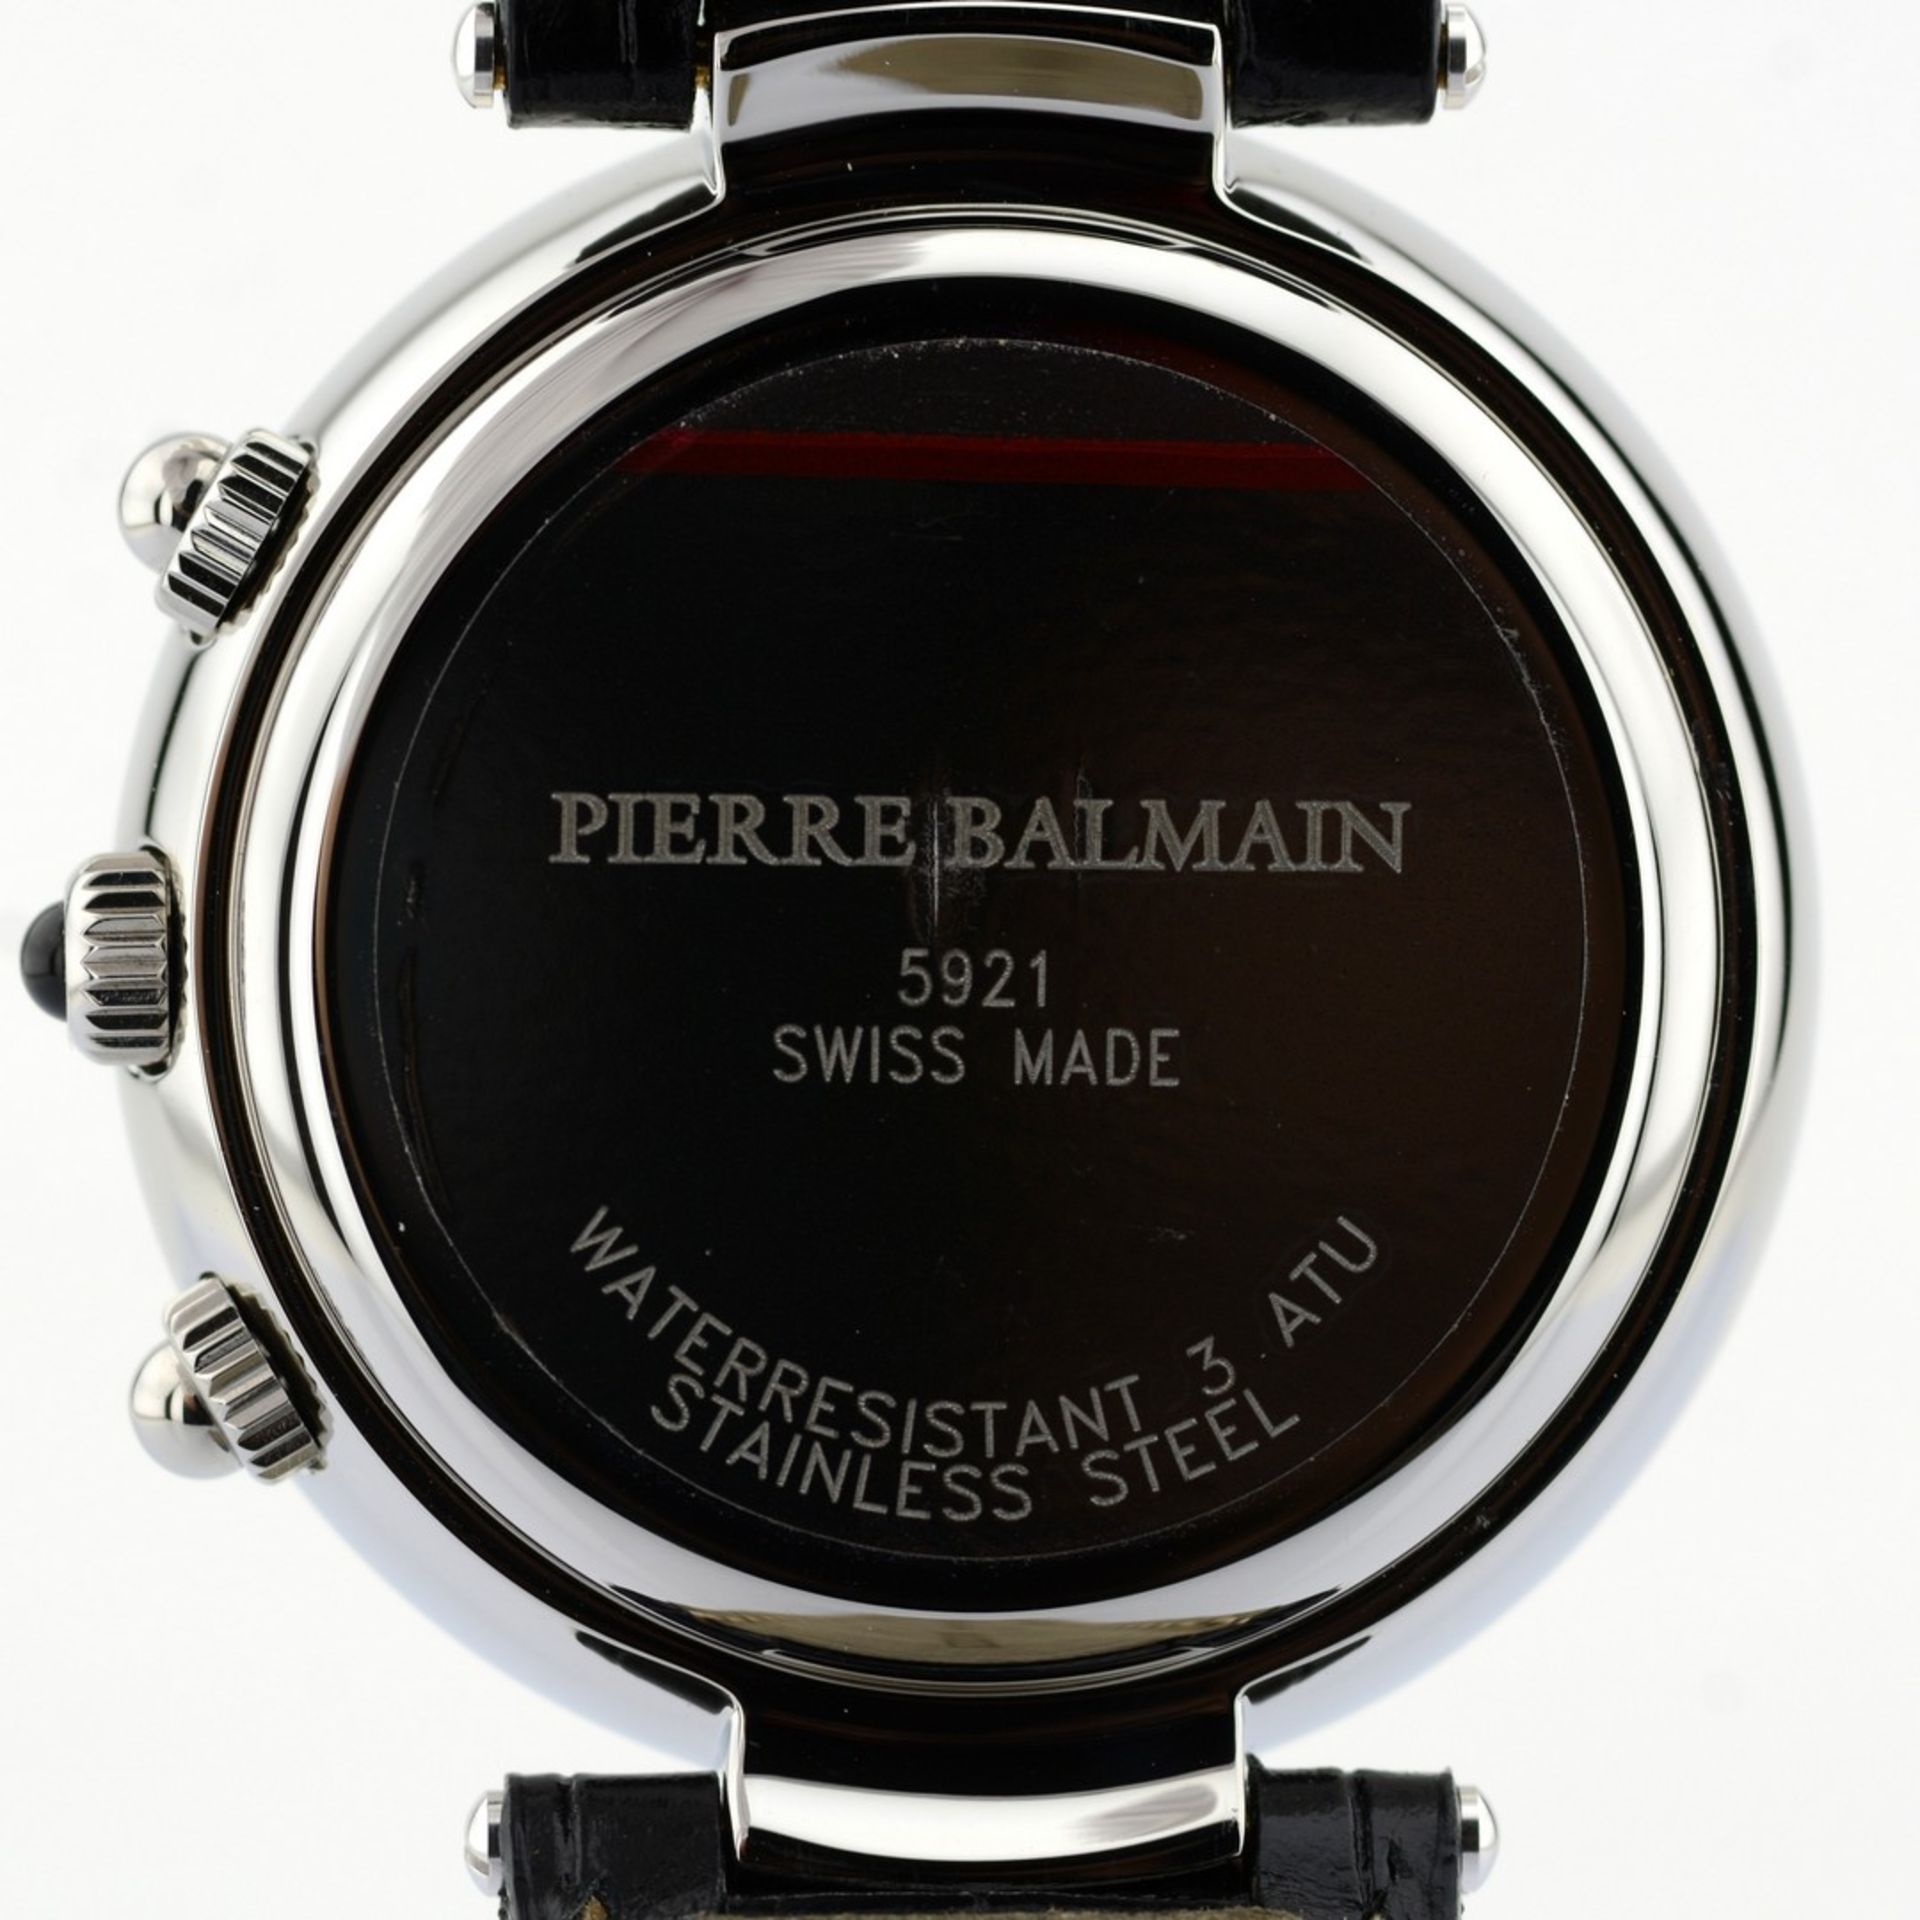 Pierre Balmain / Swiss Chronograph Date - Gentlmen's Steel Wrist Watch - Image 3 of 10